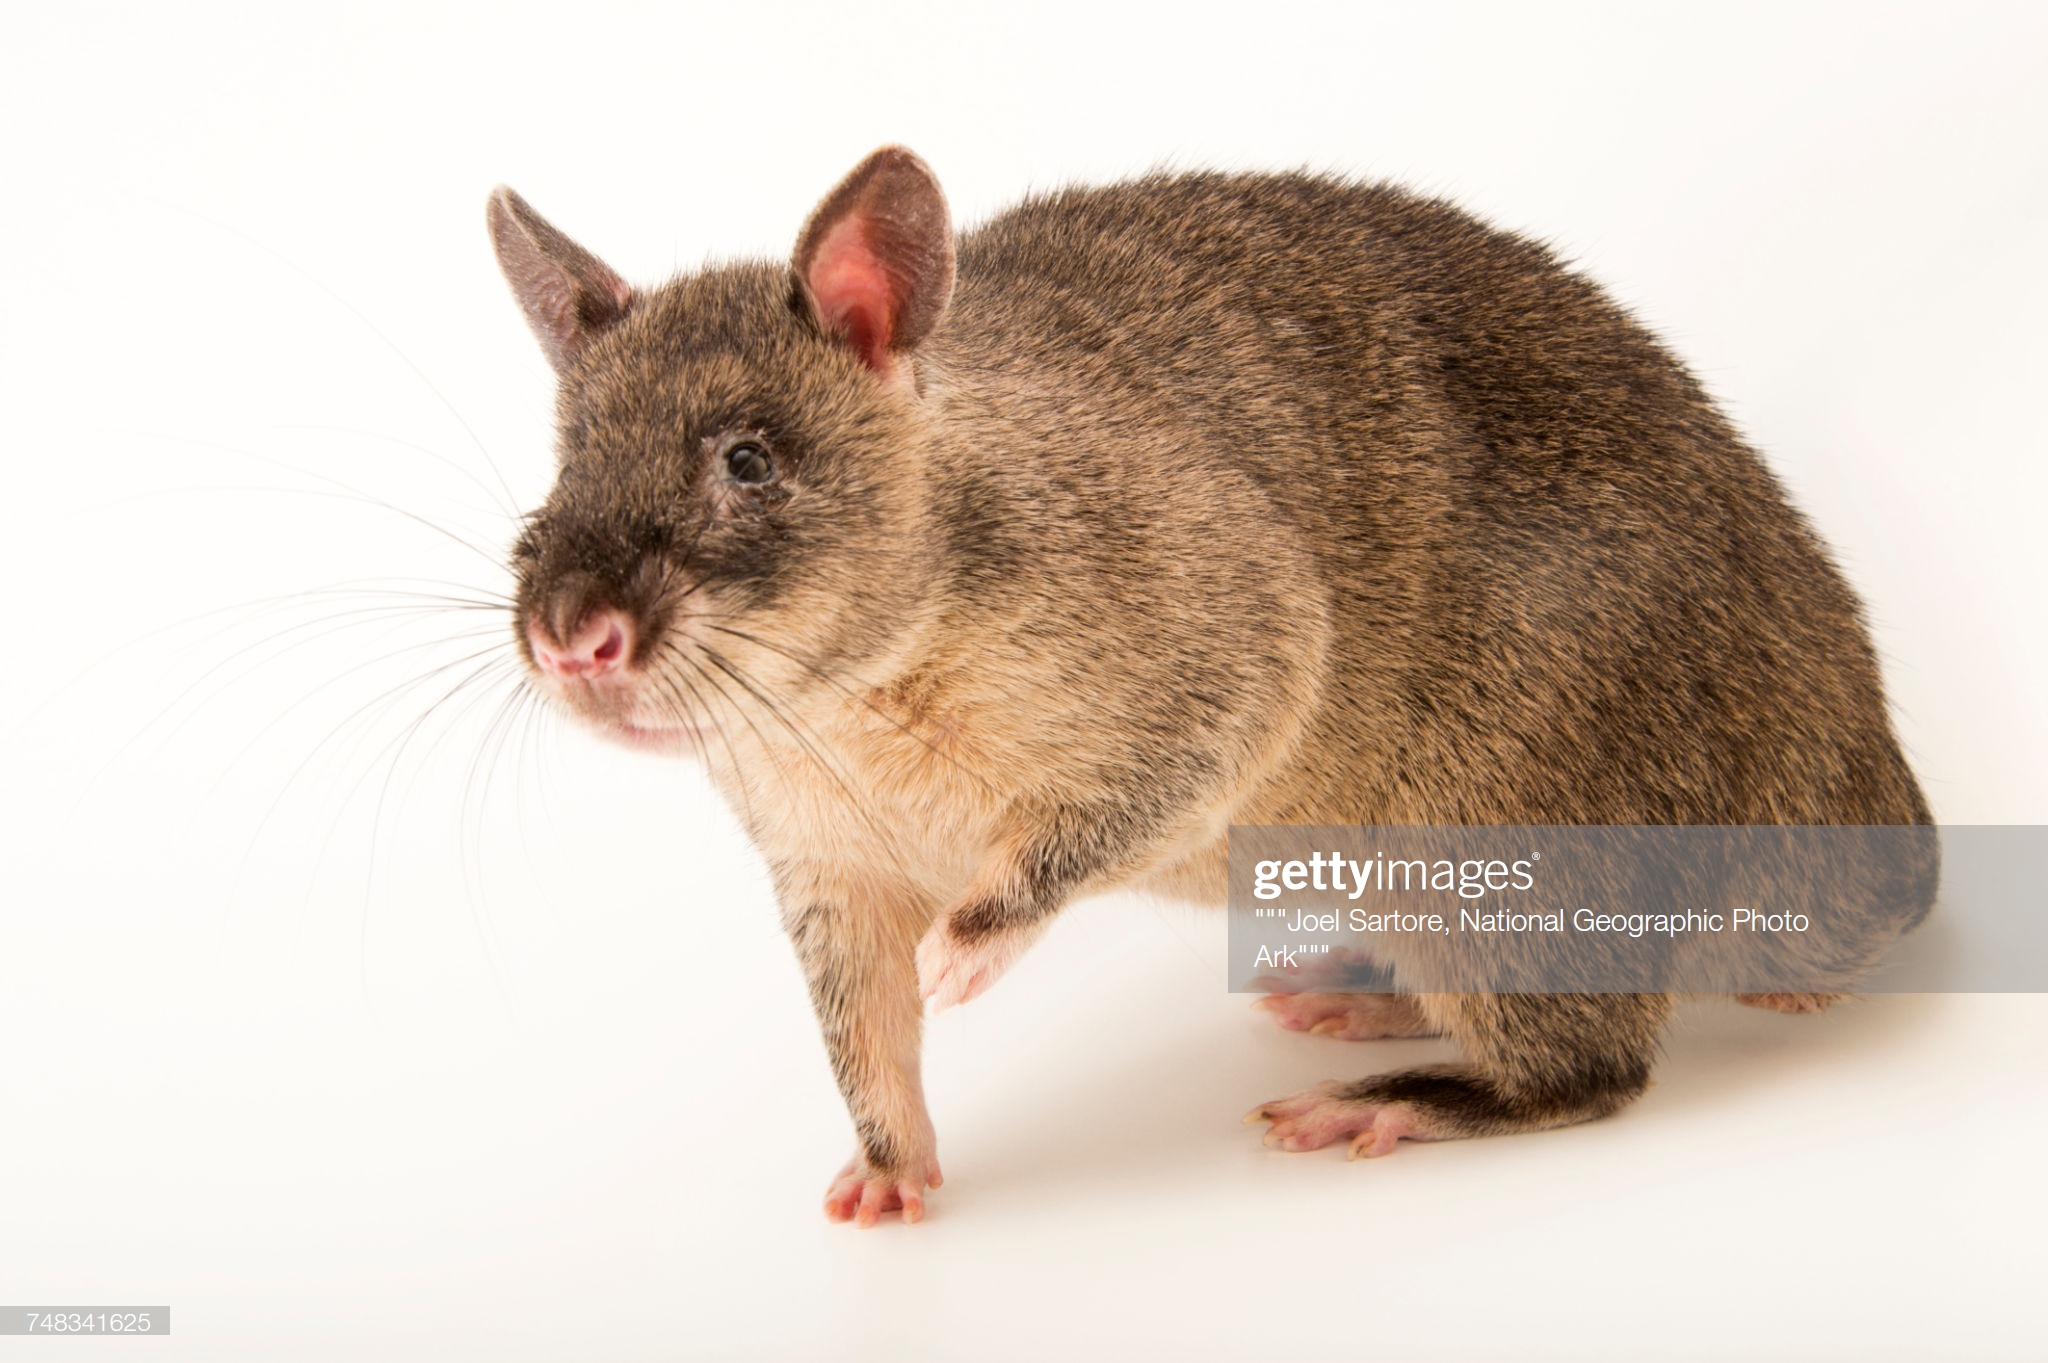 Cricetomys gambianus. Гамбийская хомяковая крыса. Гамбийская хомяковая крыса (Cricetomys gambianus). Африканские хомяковые крысы. Гималайская хомяковая крыса.